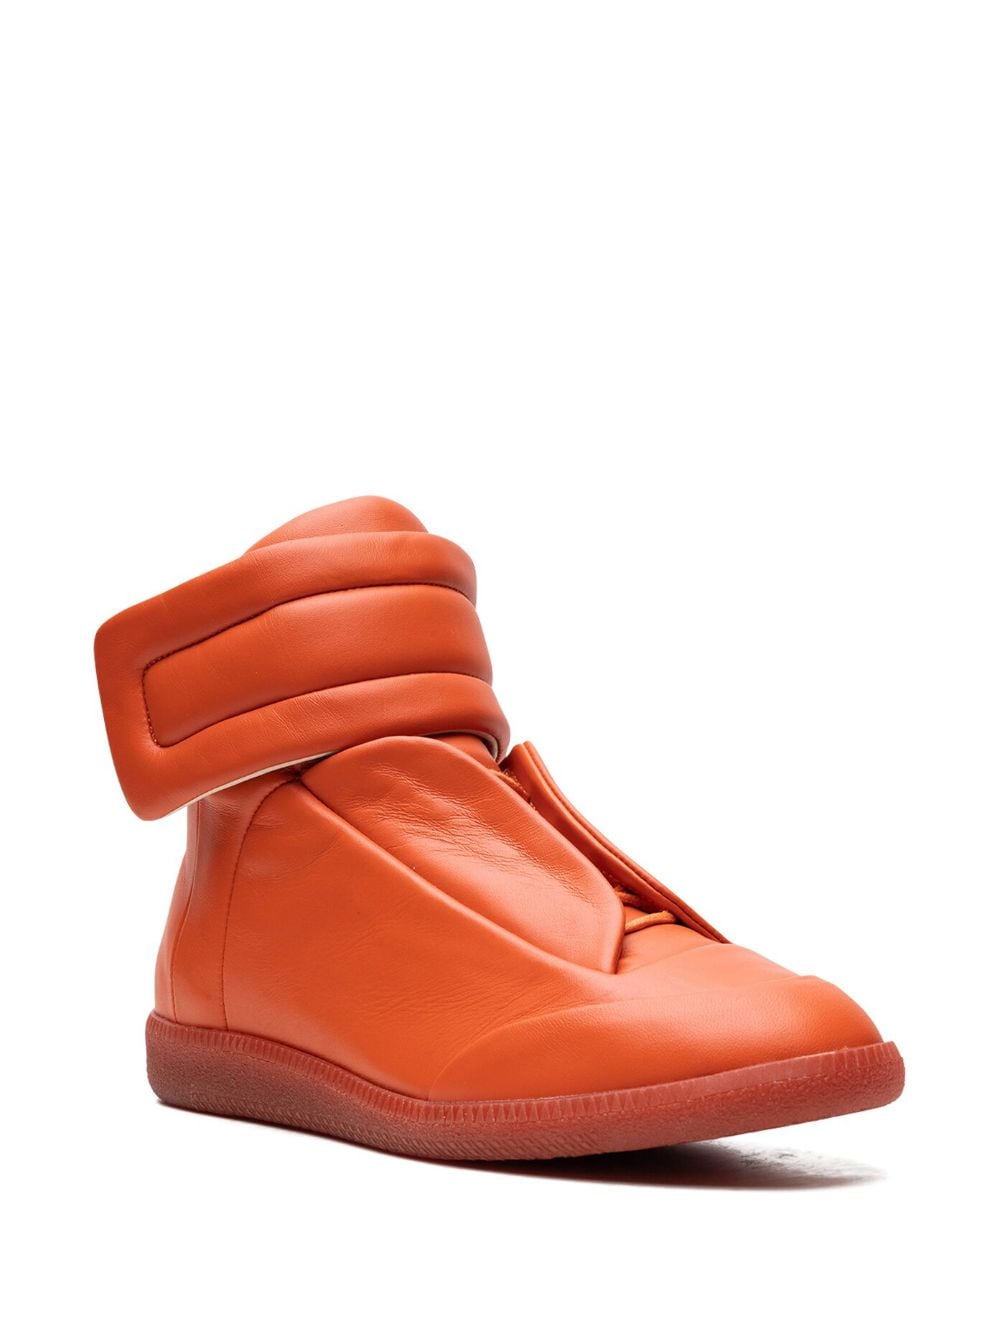 Maison Margiela Future High "Orange" sneakers - Oranje